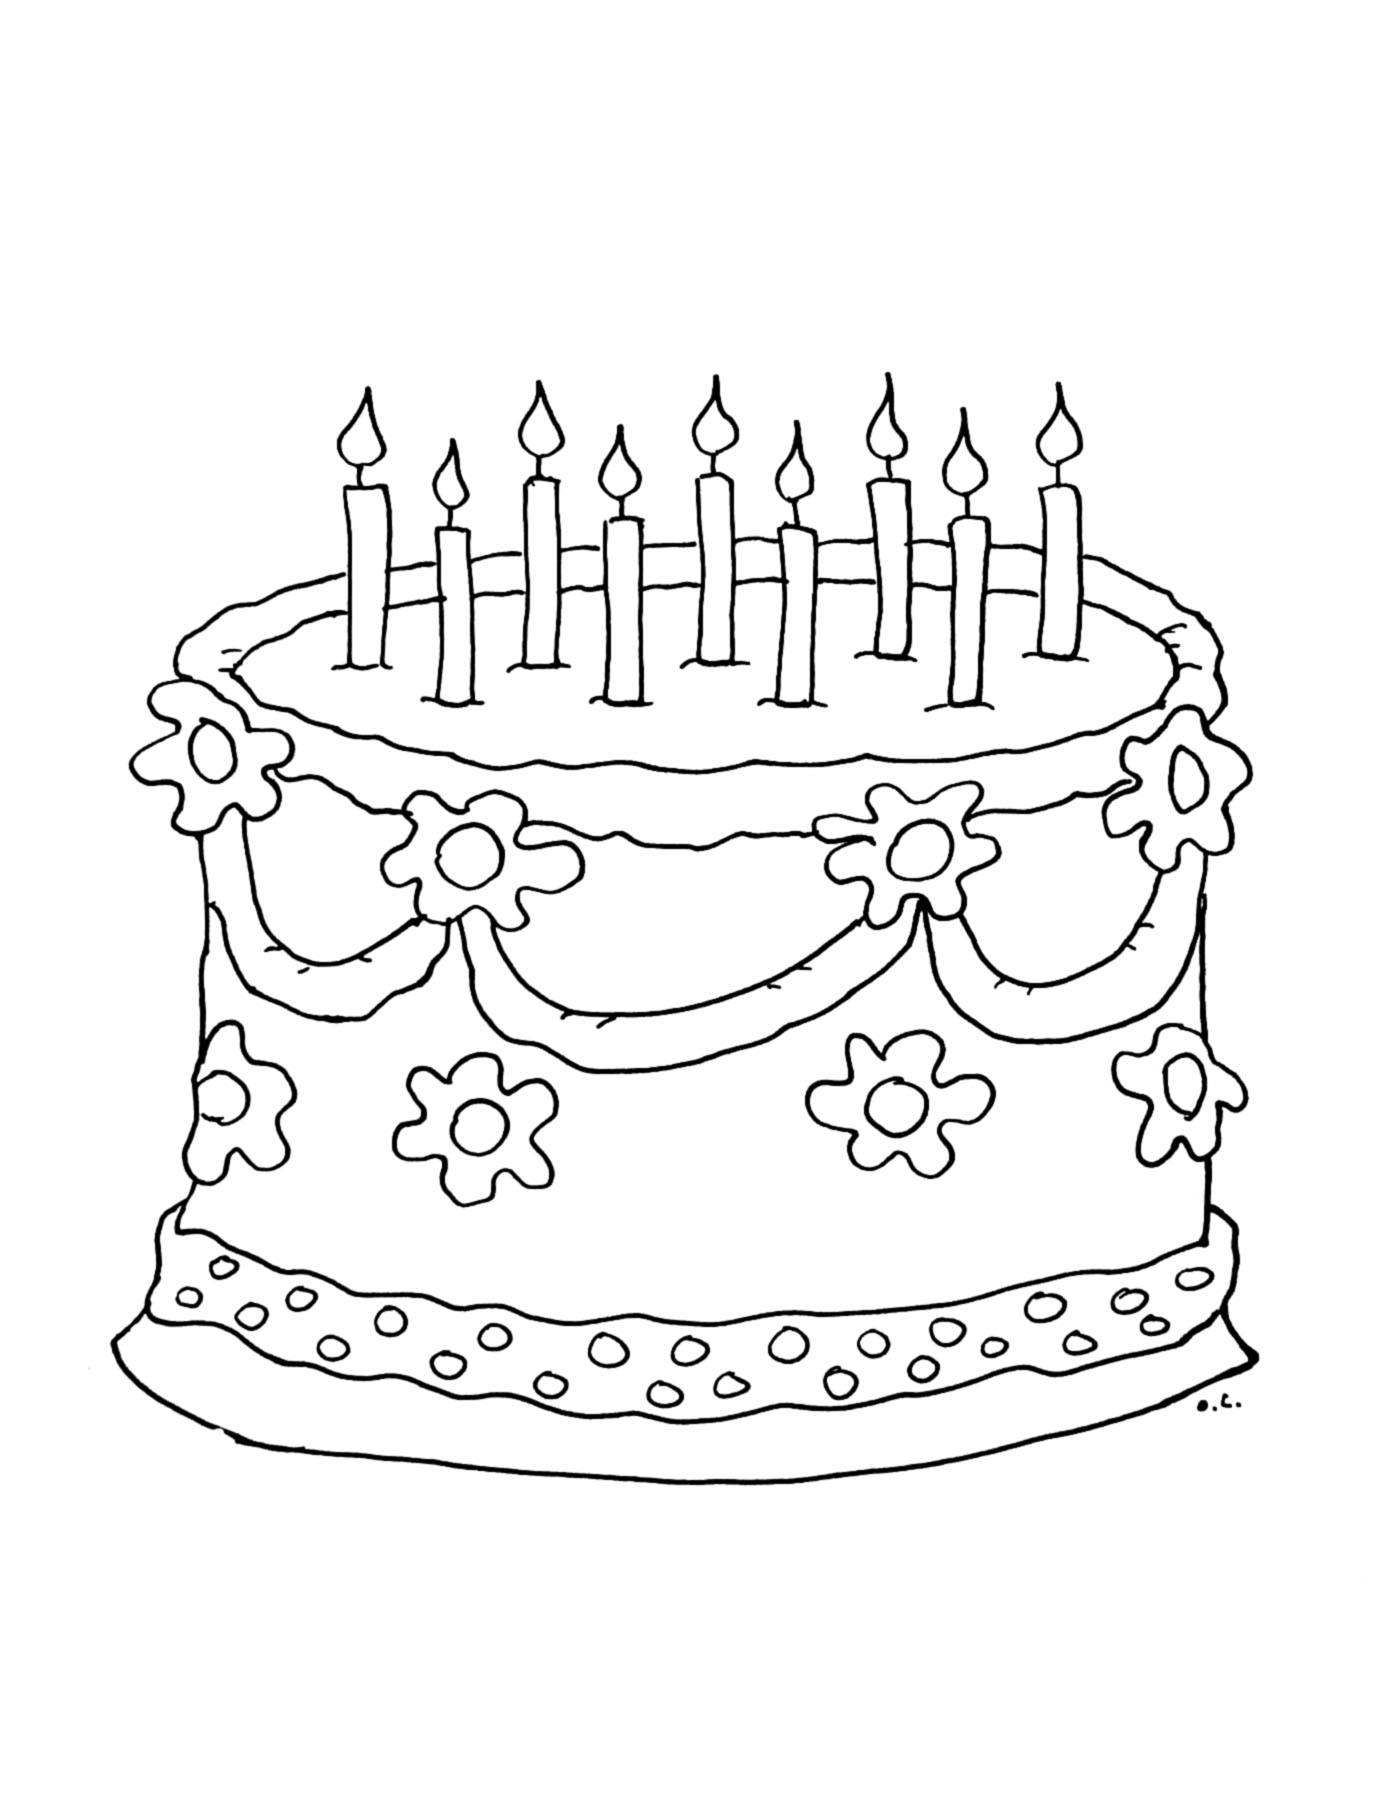 Coloração de um grande bolo de aniversário com 9 velas para soprar